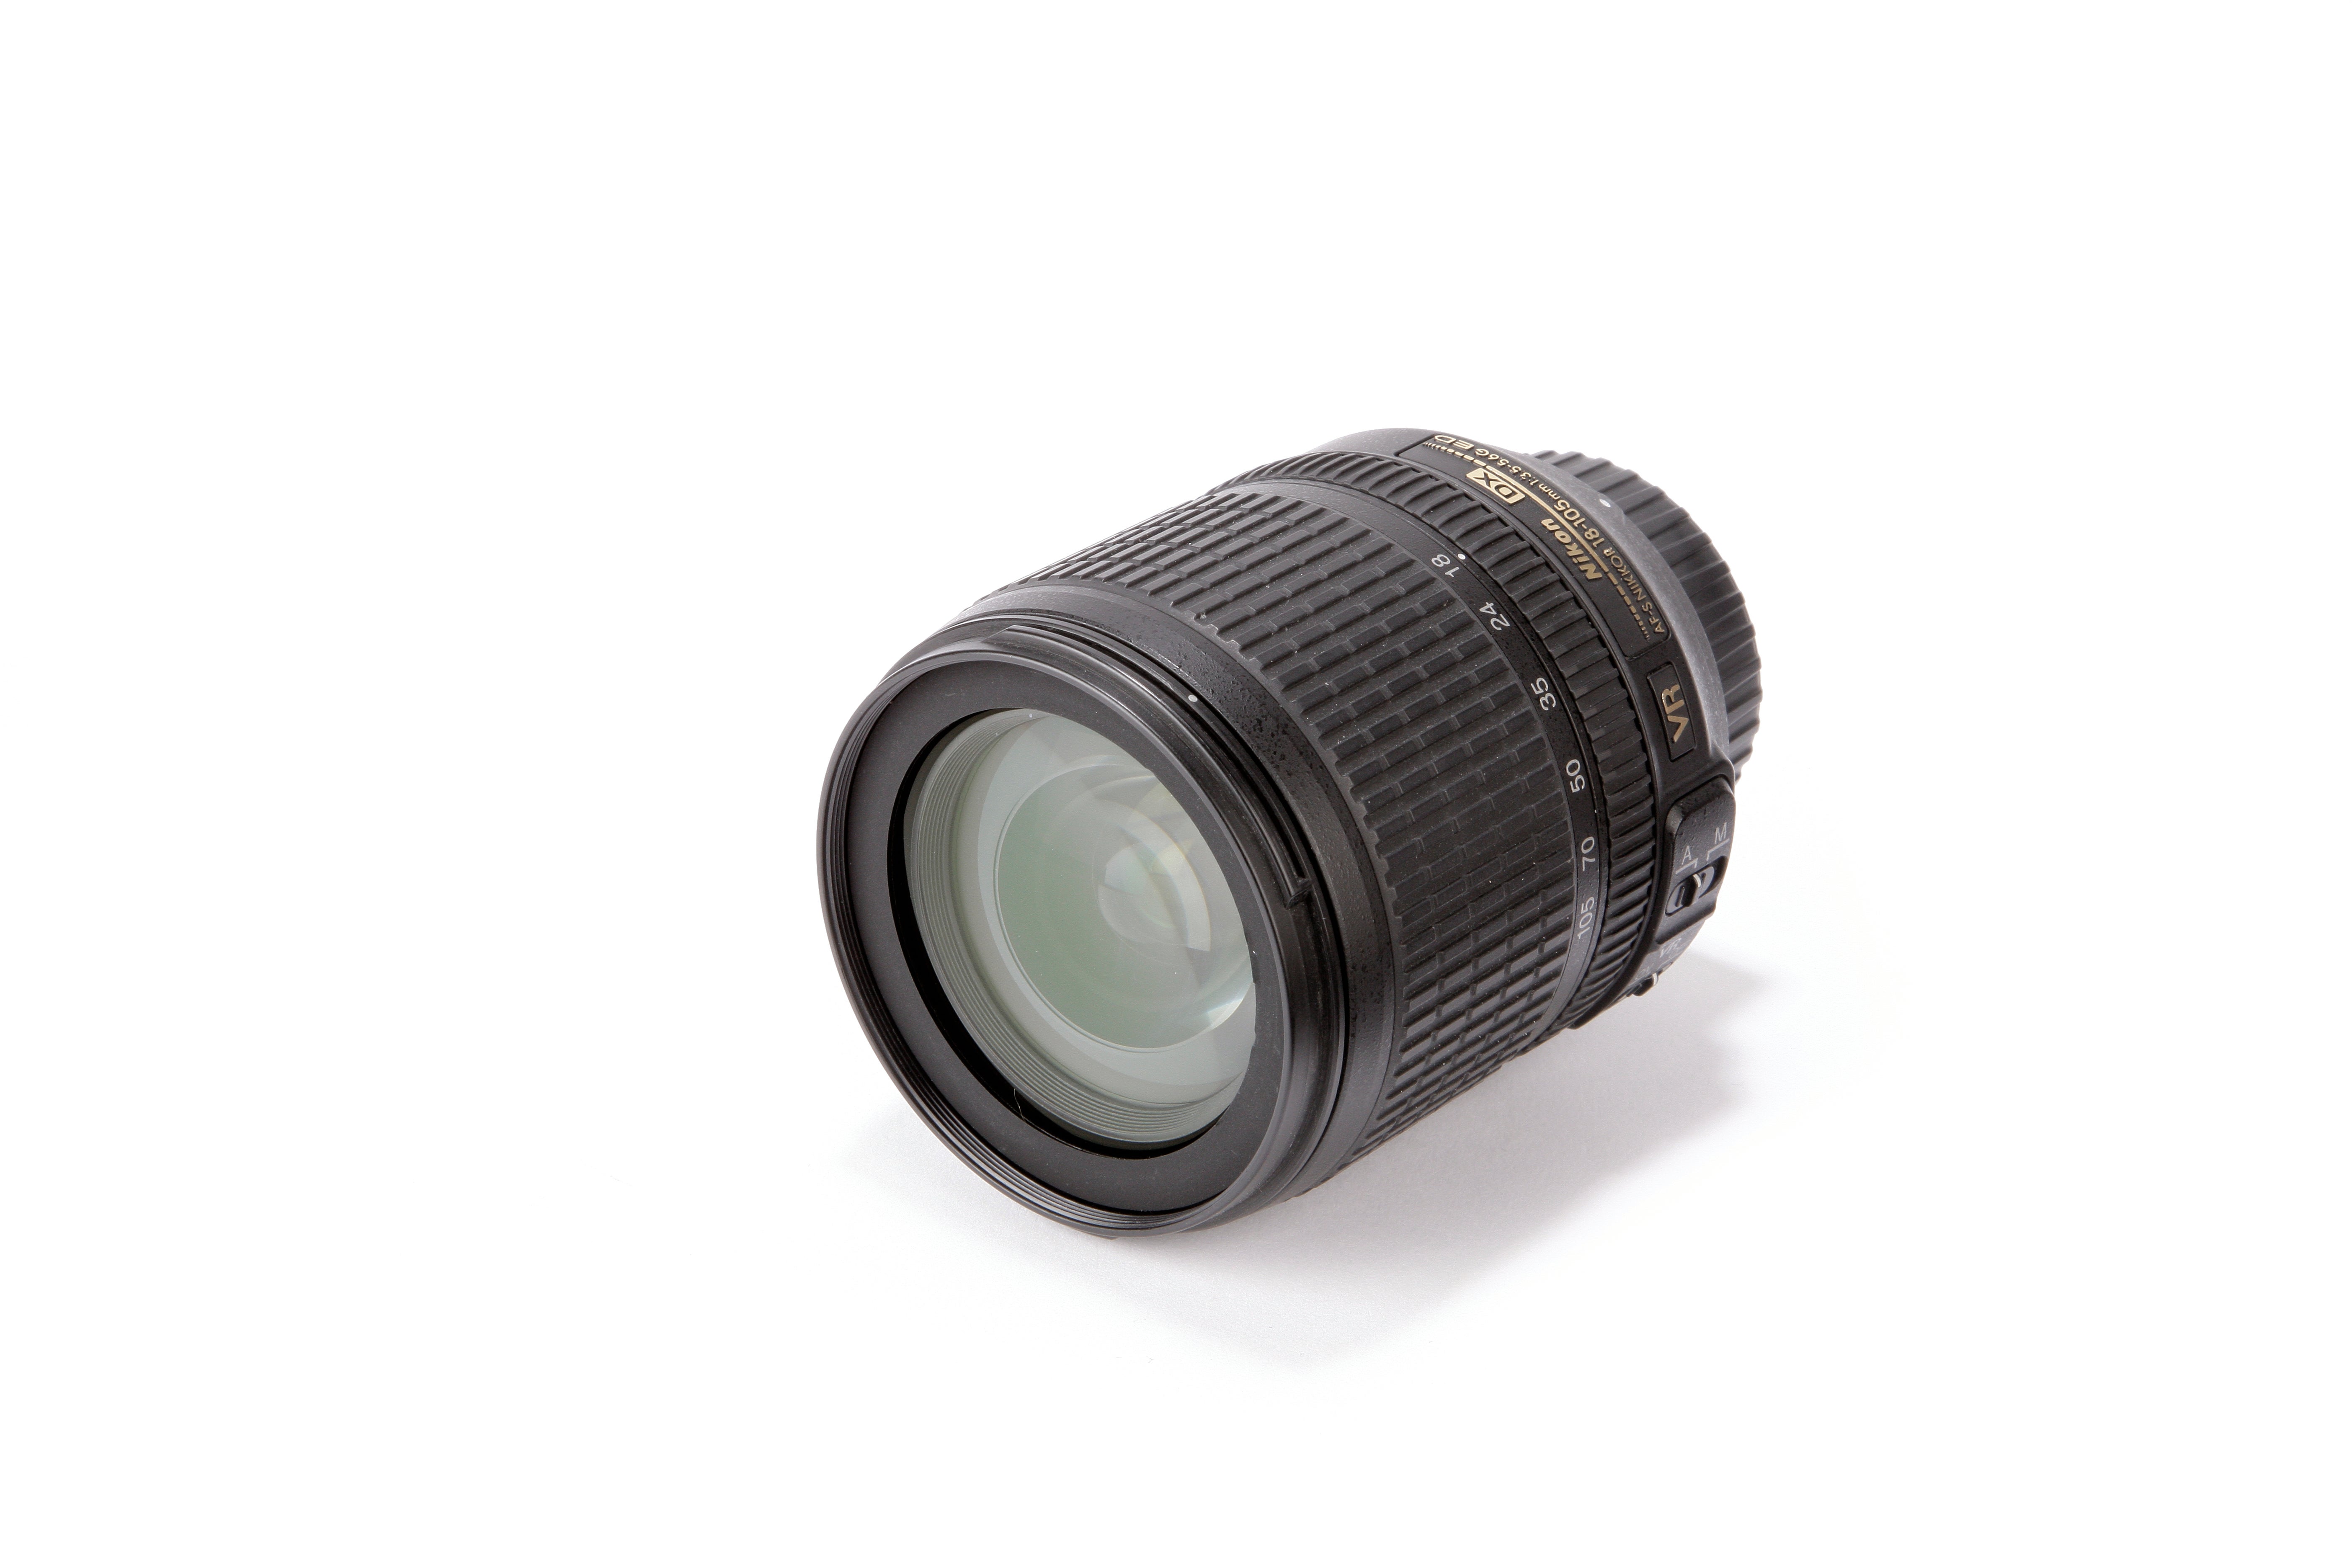 Nikon 18-105mm f/3.5-5.6G ED-IF VR AF-S DX Review